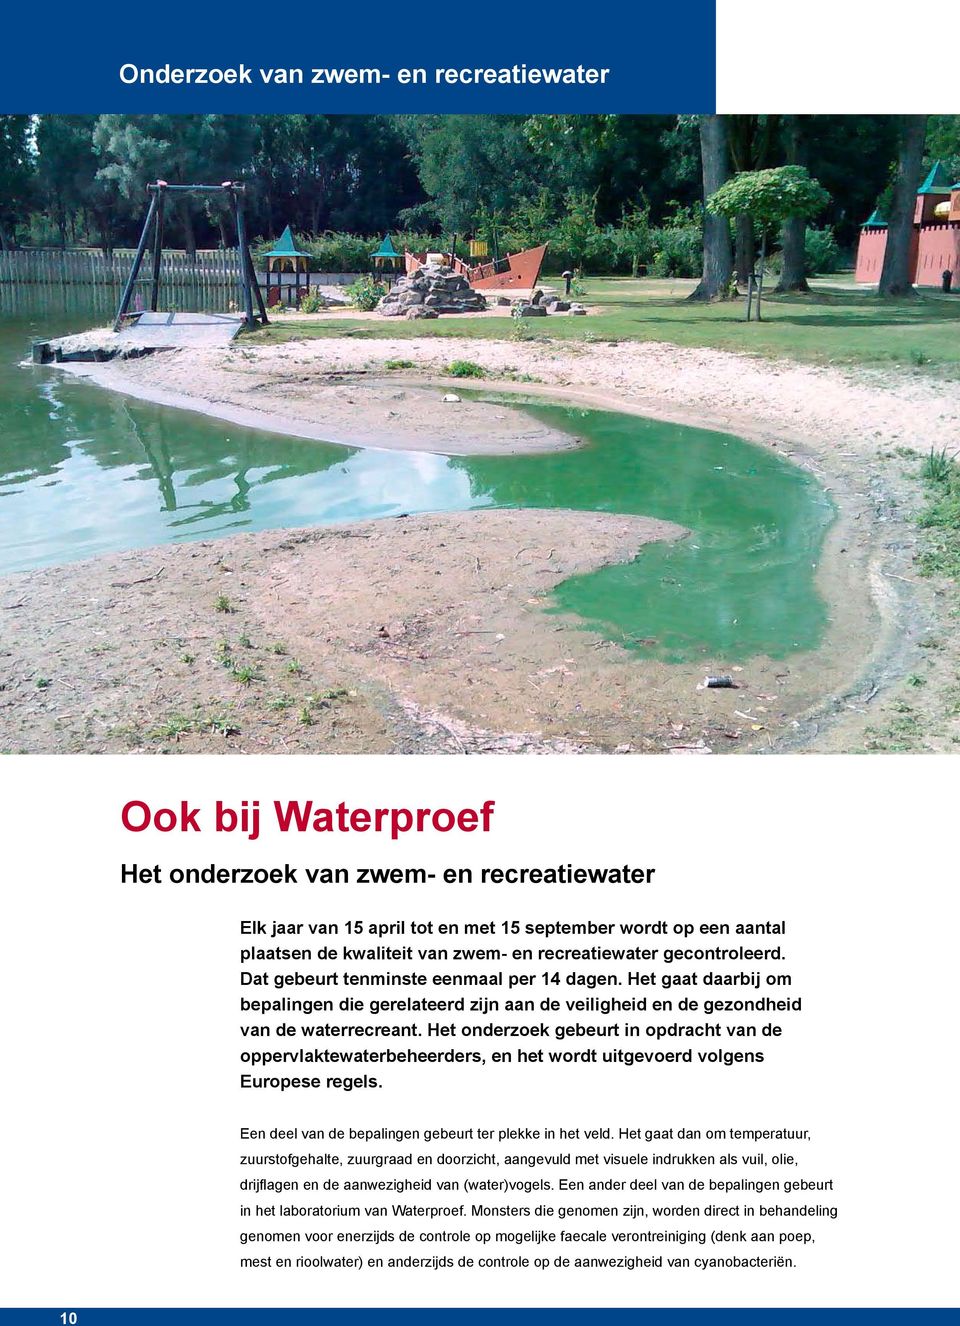 Het onderzoek gebeurt in opdracht van de oppervlaktewaterbeheerders, en het wordt uitgevoerd volgens Europese regels. Een deel van de bepalingen gebeurt ter plekke in het veld.